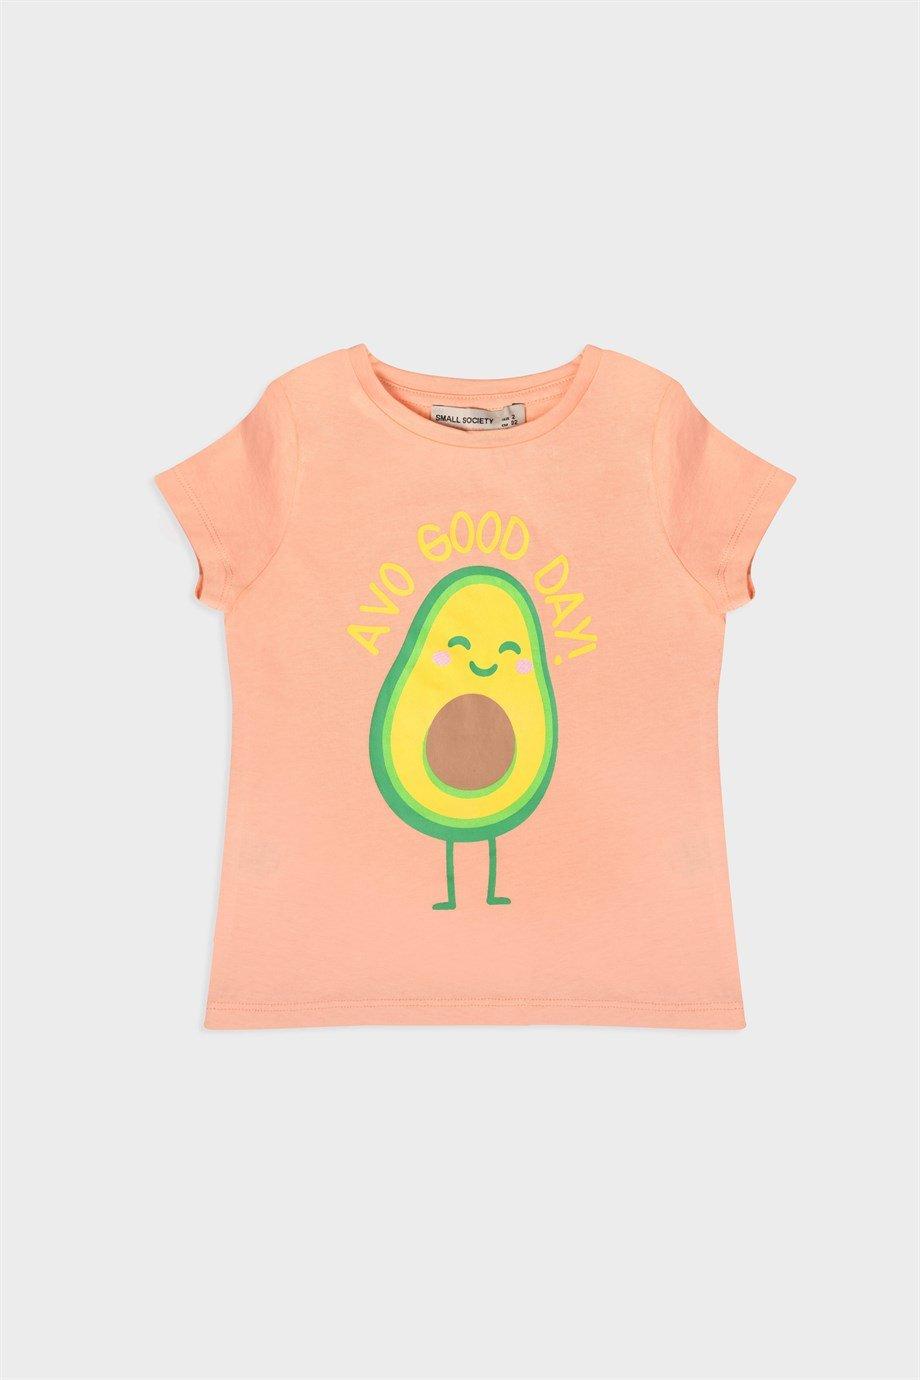 Small Society Zalm avocado bedrukt T-shirt voor meisje